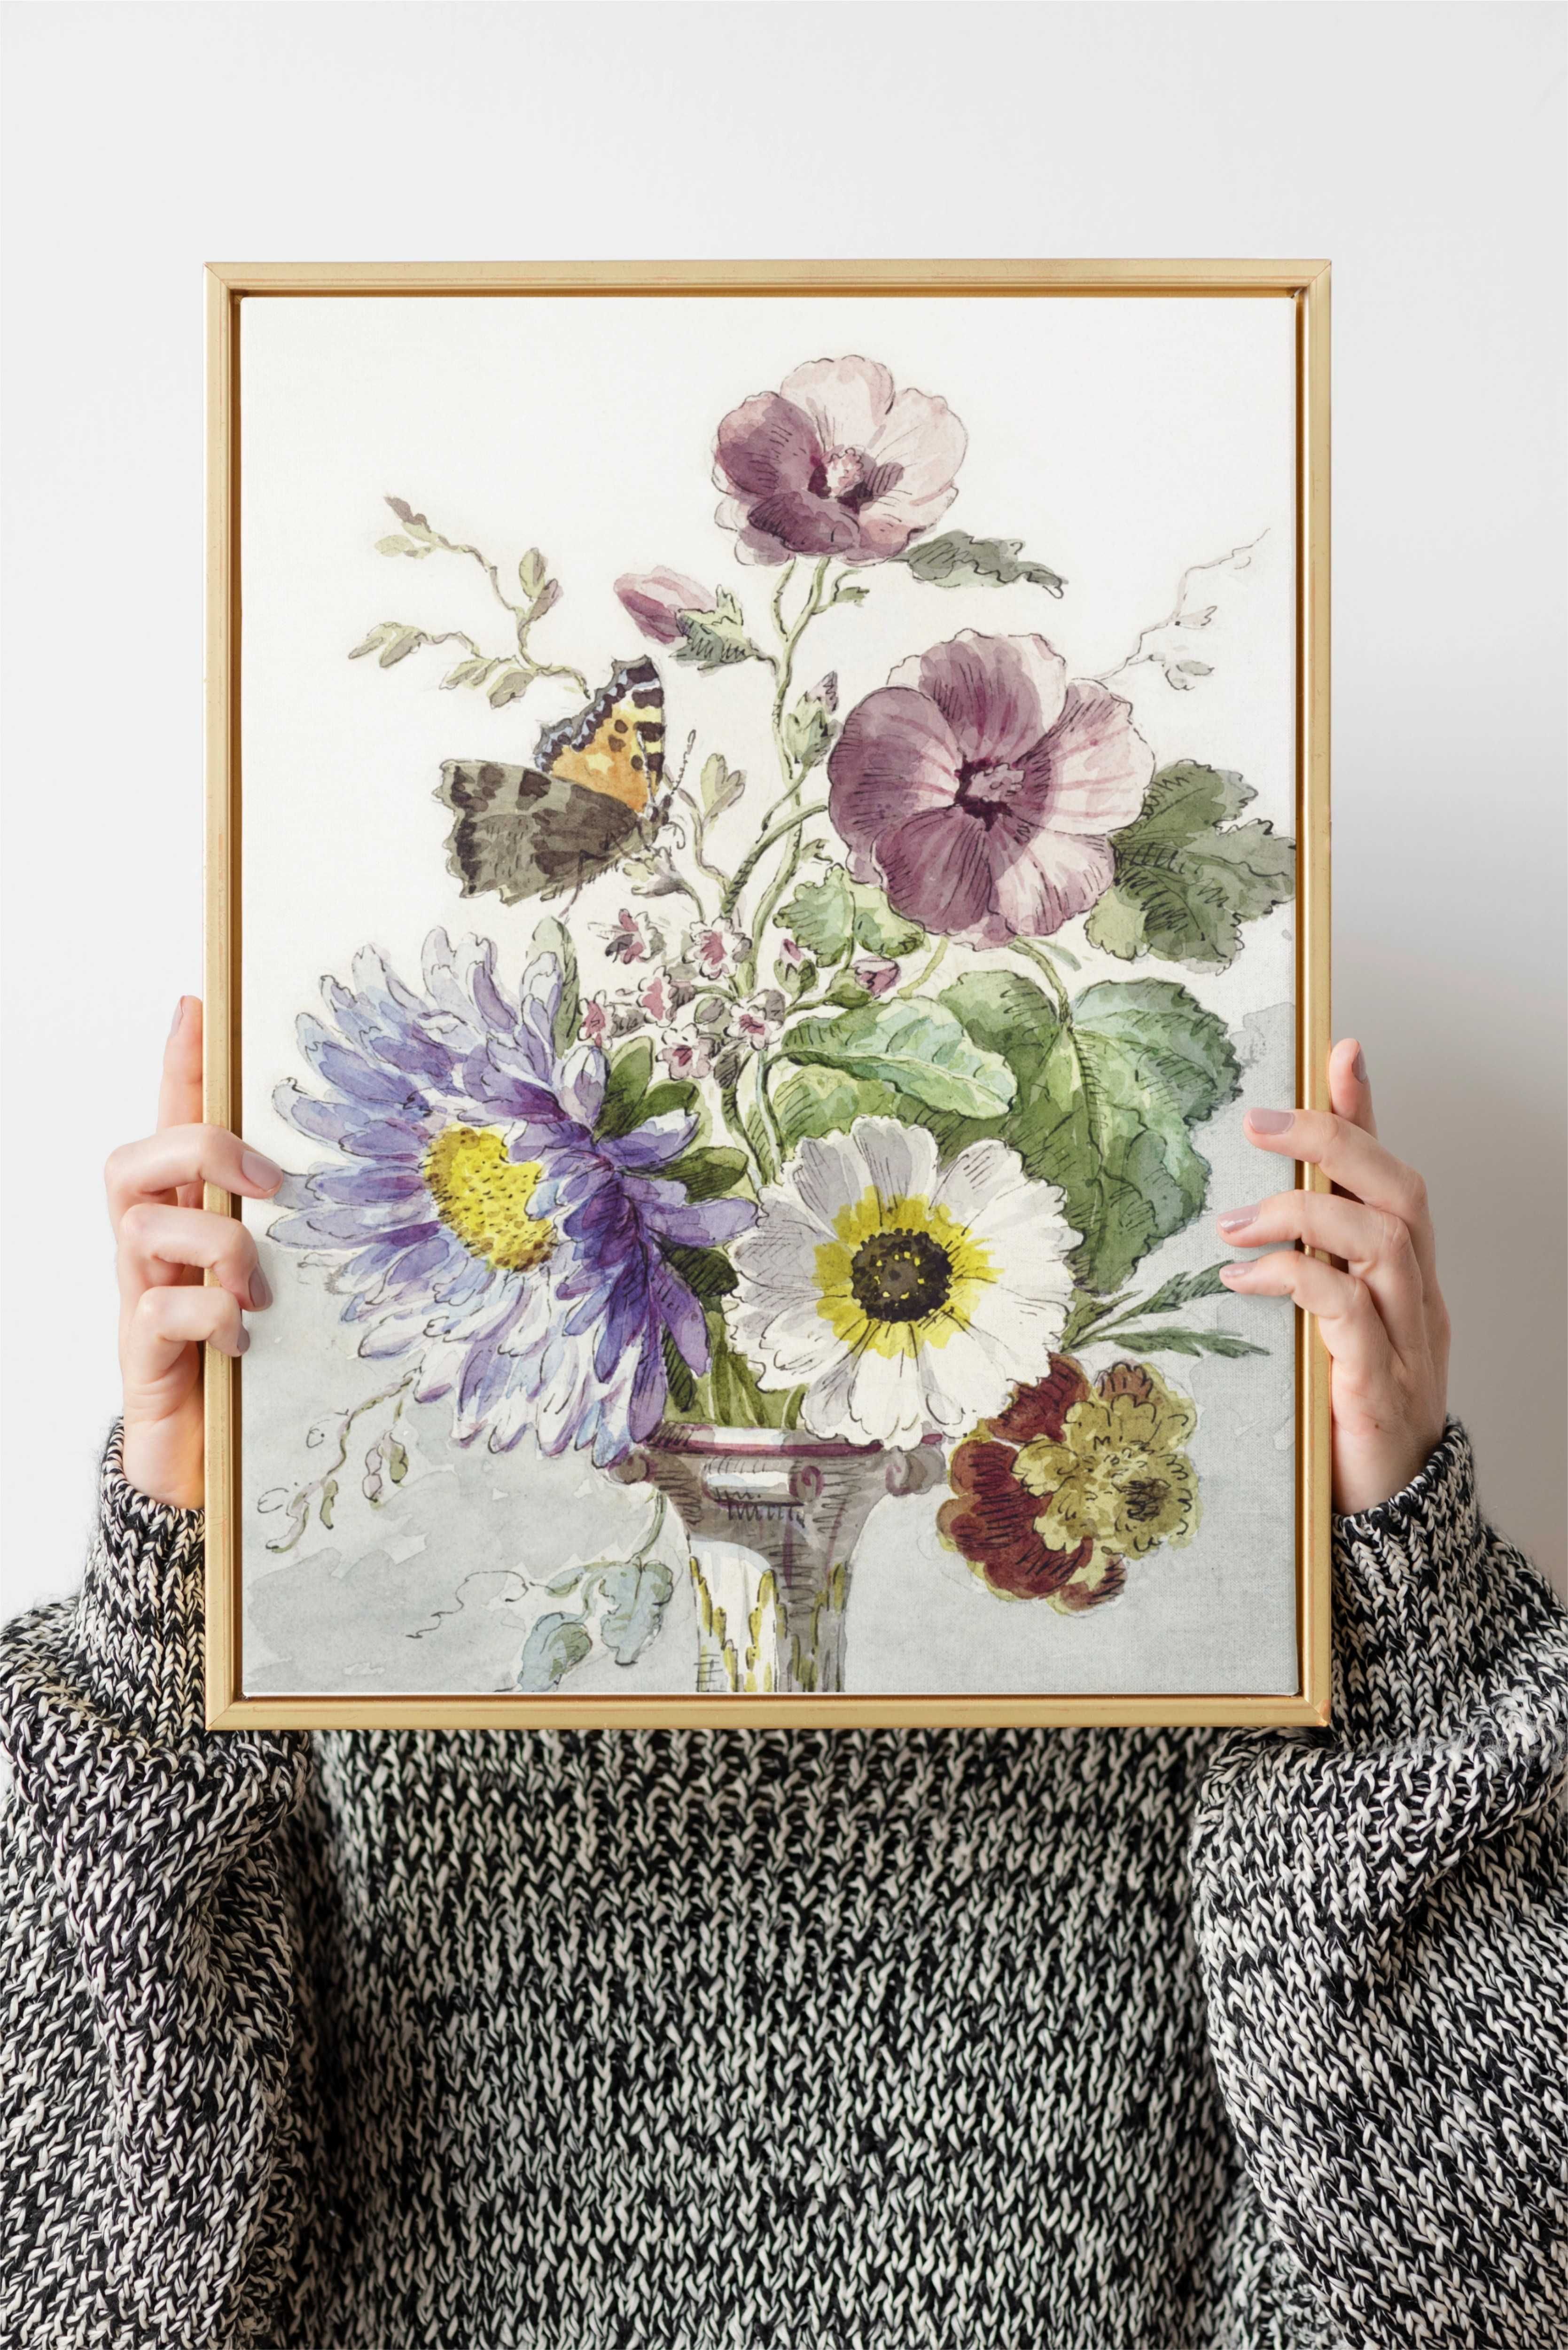 Plakat A3 Bouquet of Flowers with a Butterfly - Obraz kwiaty Leen#1